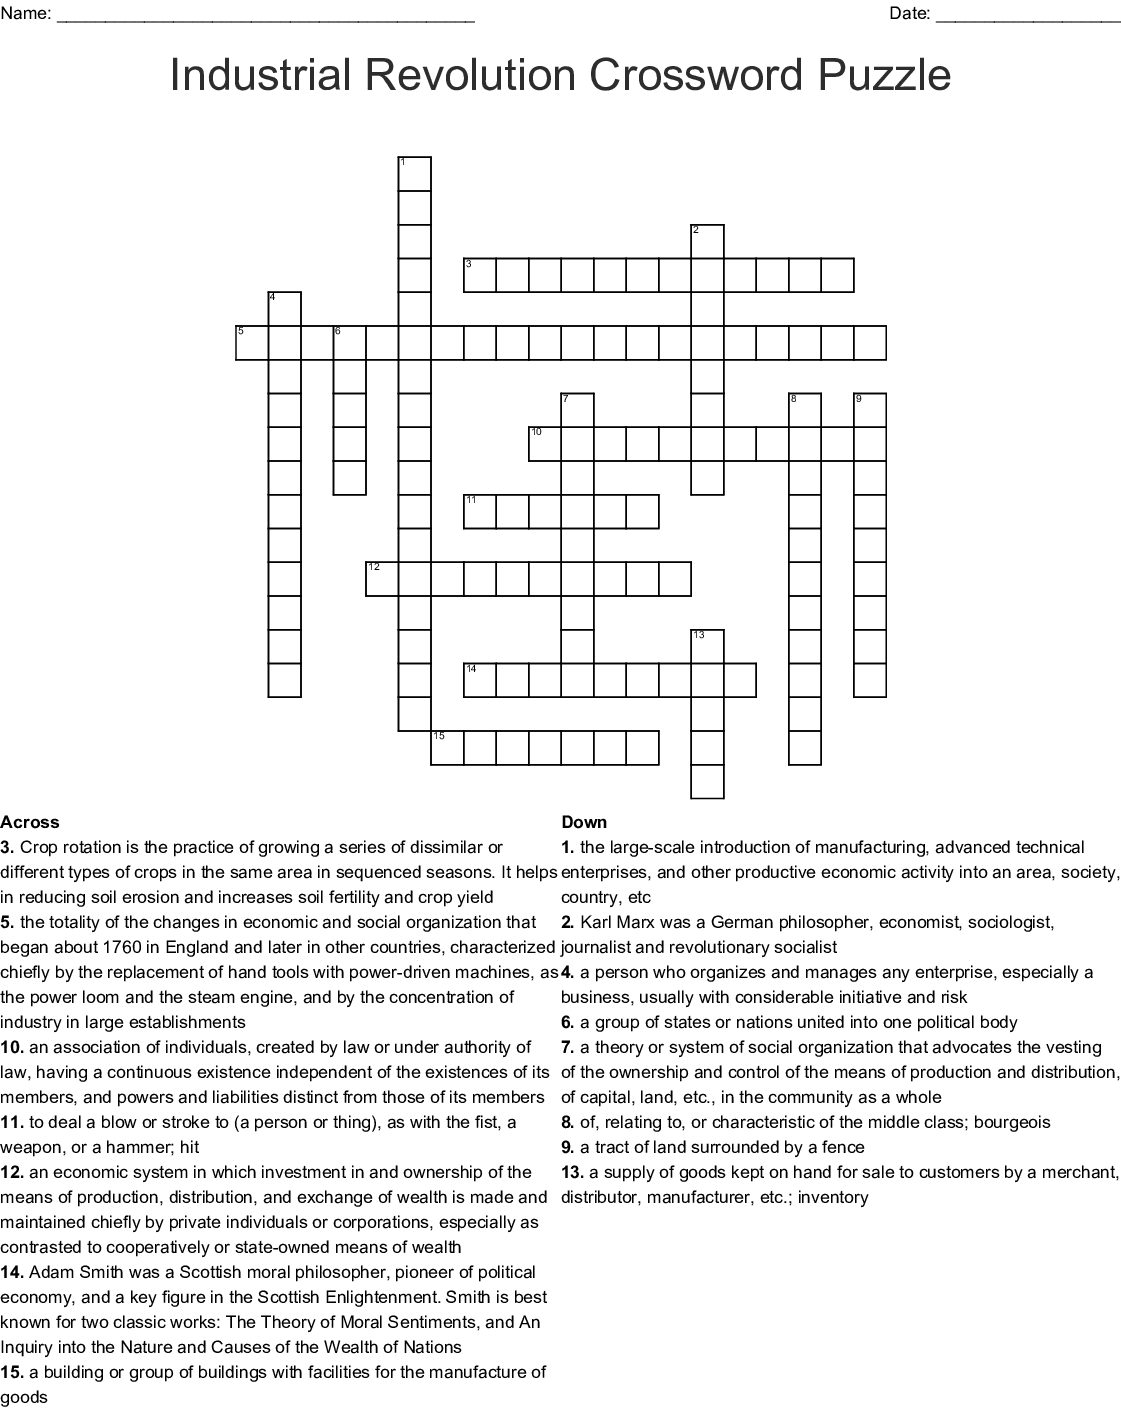 pop culture crossword quiz level 1